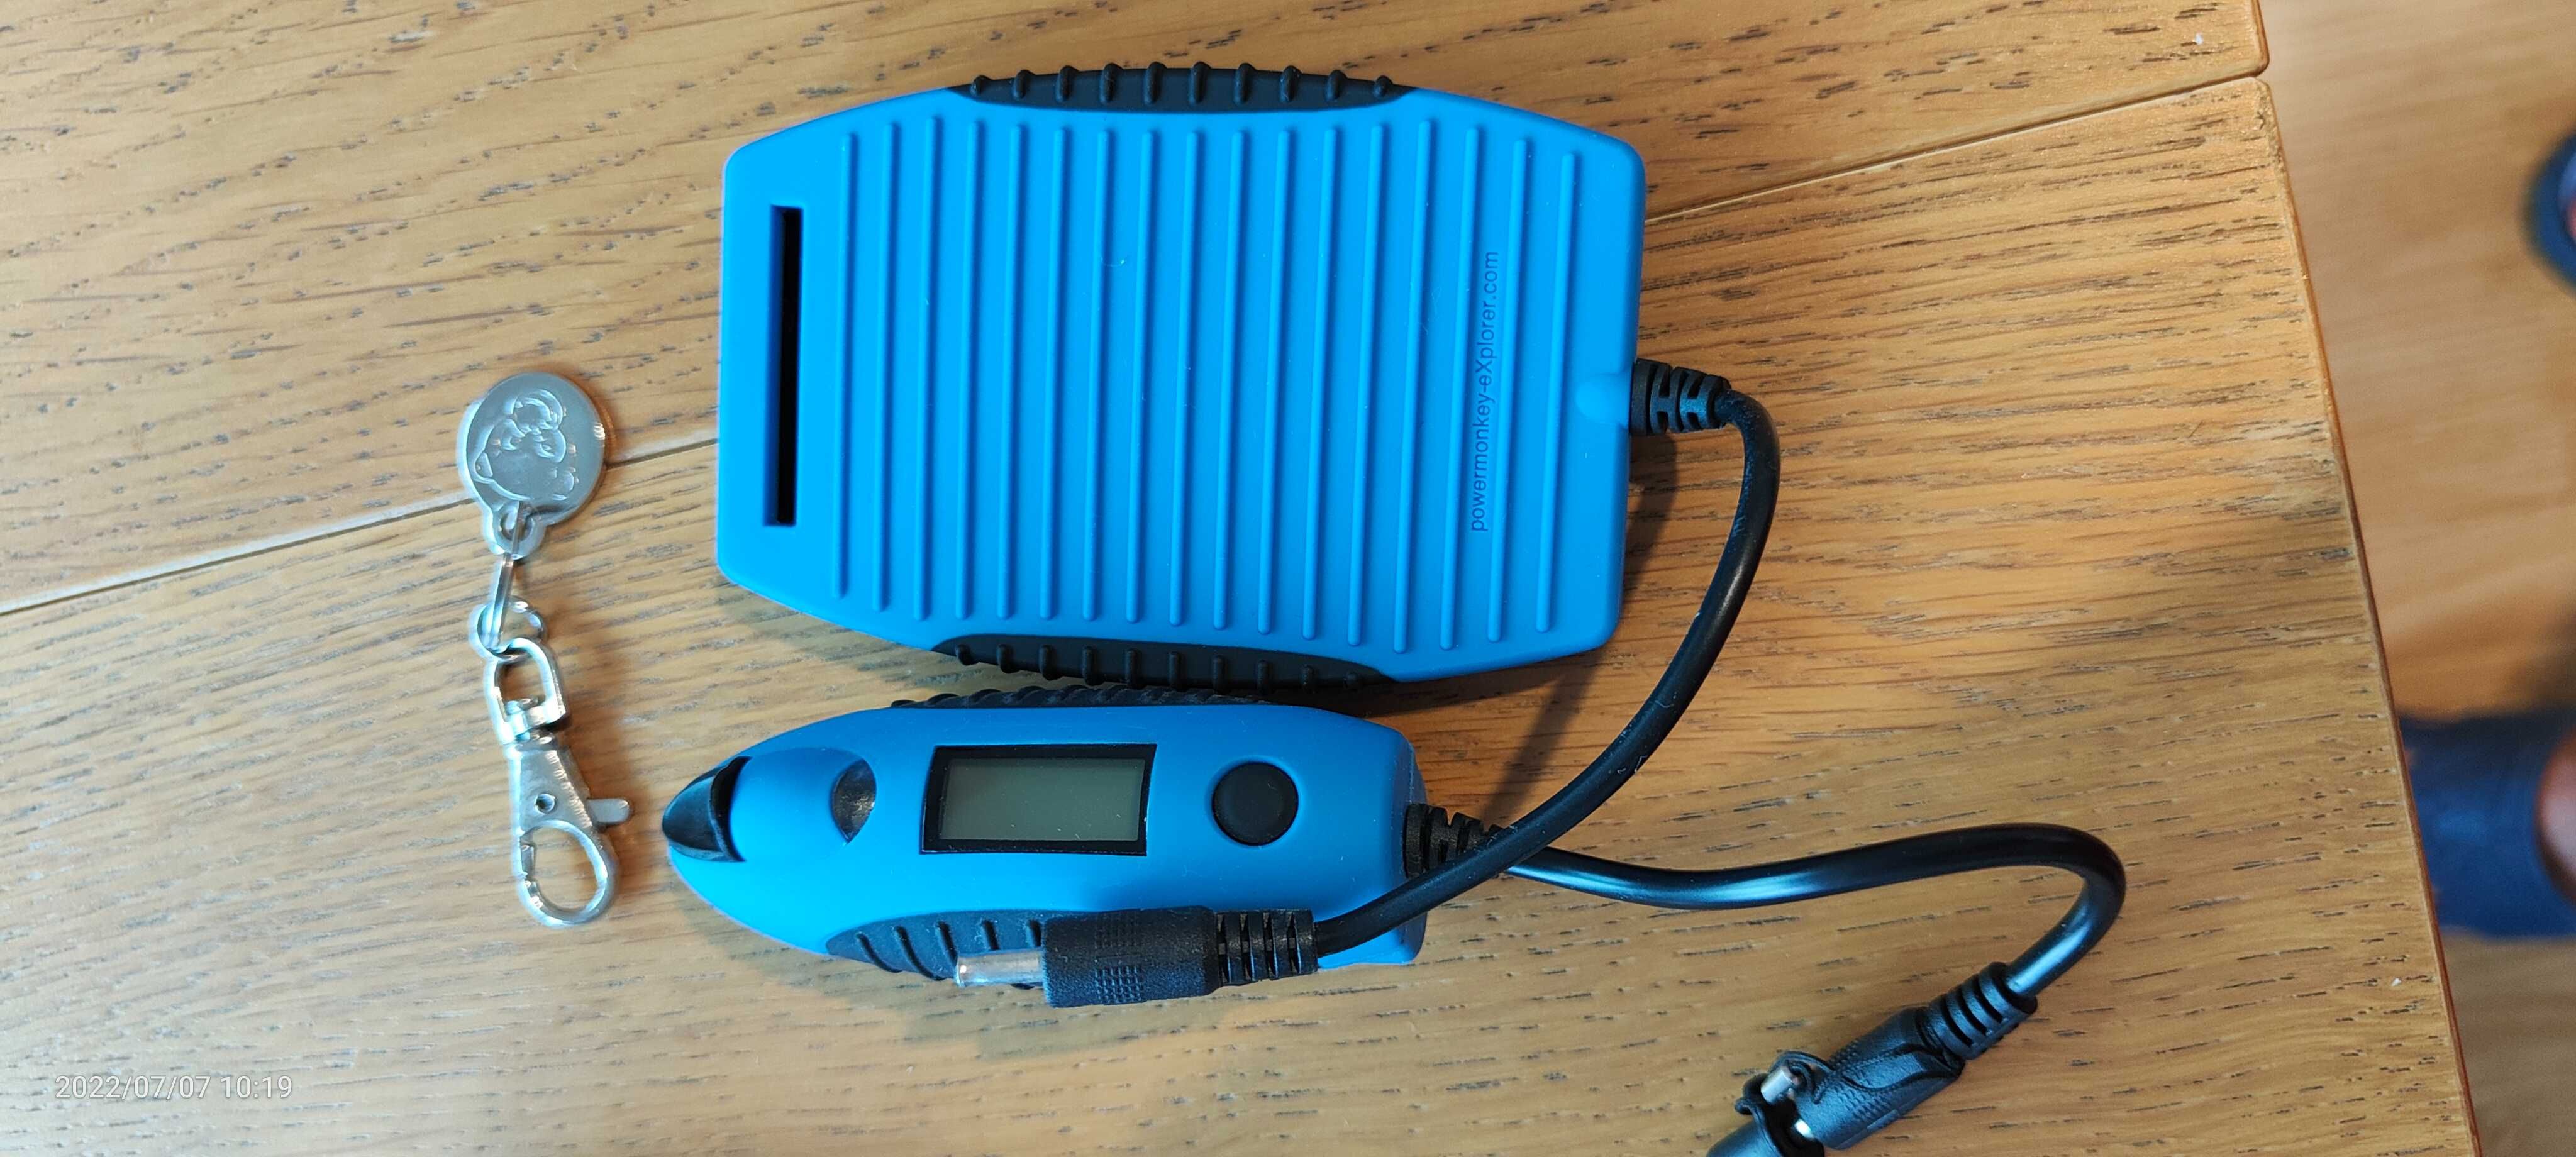 Incarcator solar pentru multiple dispozitive, mouse wireless cadou